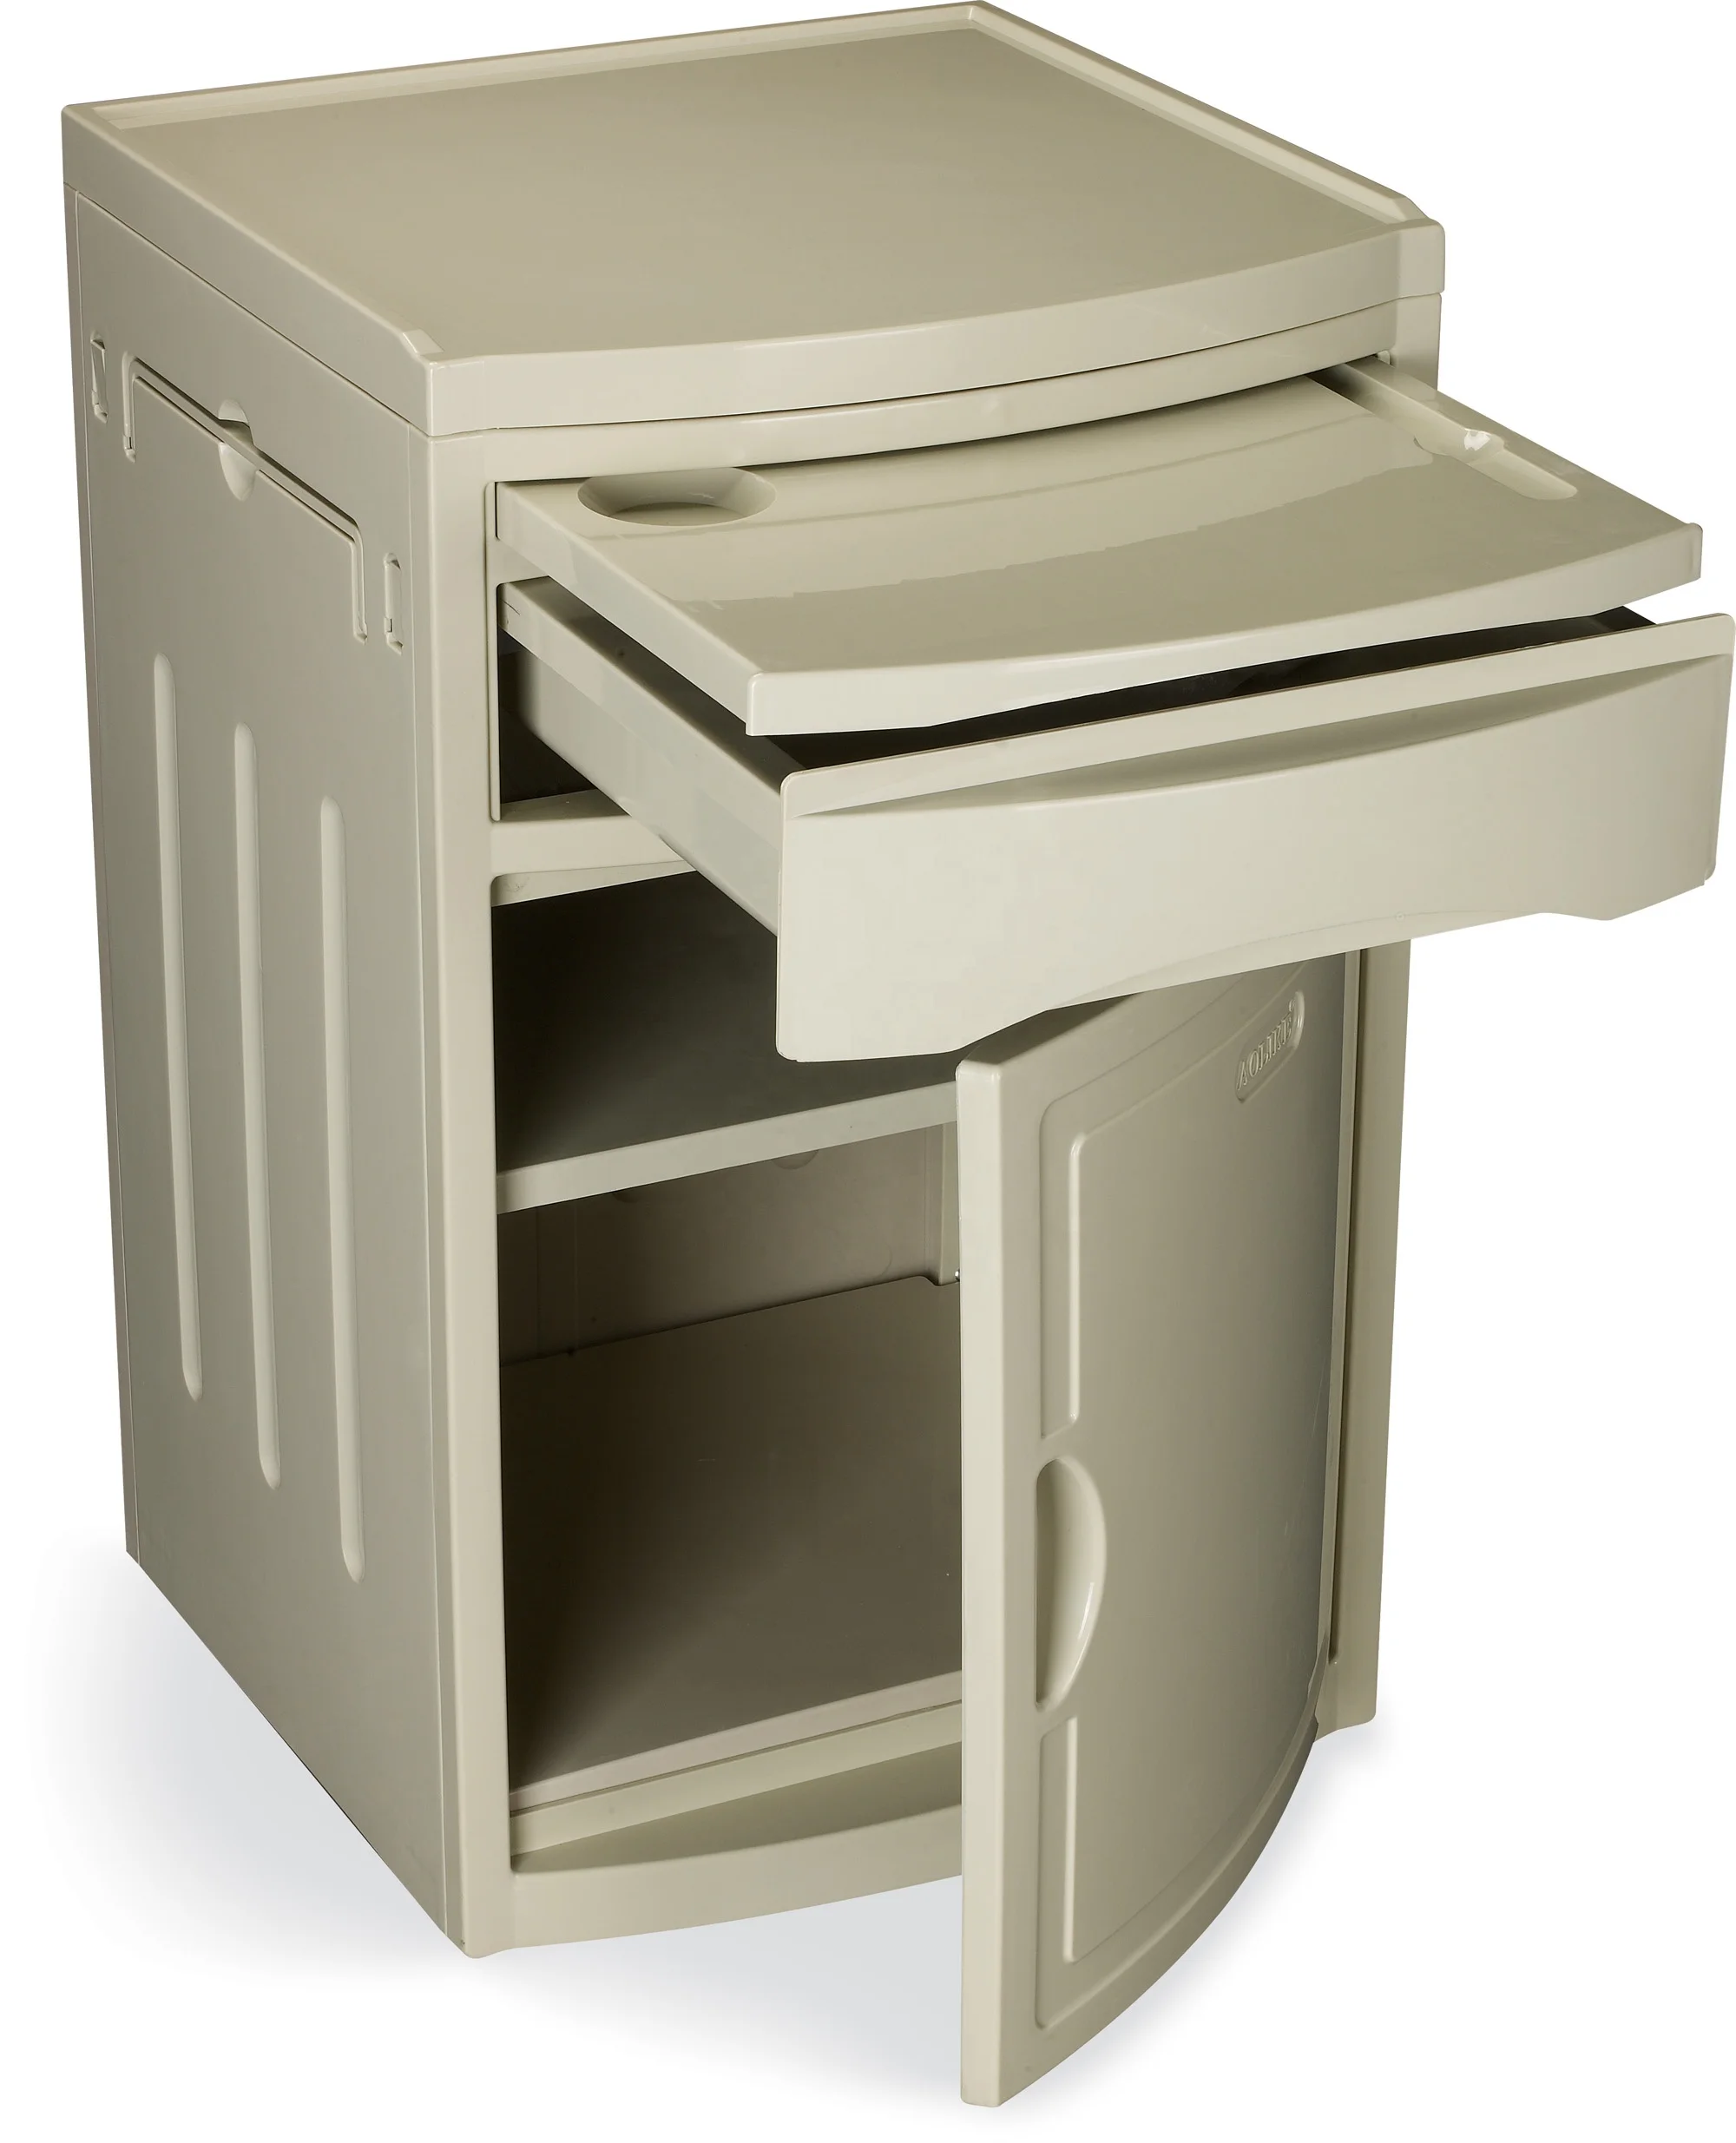 ALK06-AG01 ABS hospital bedside cabinet storage with castors for hospital